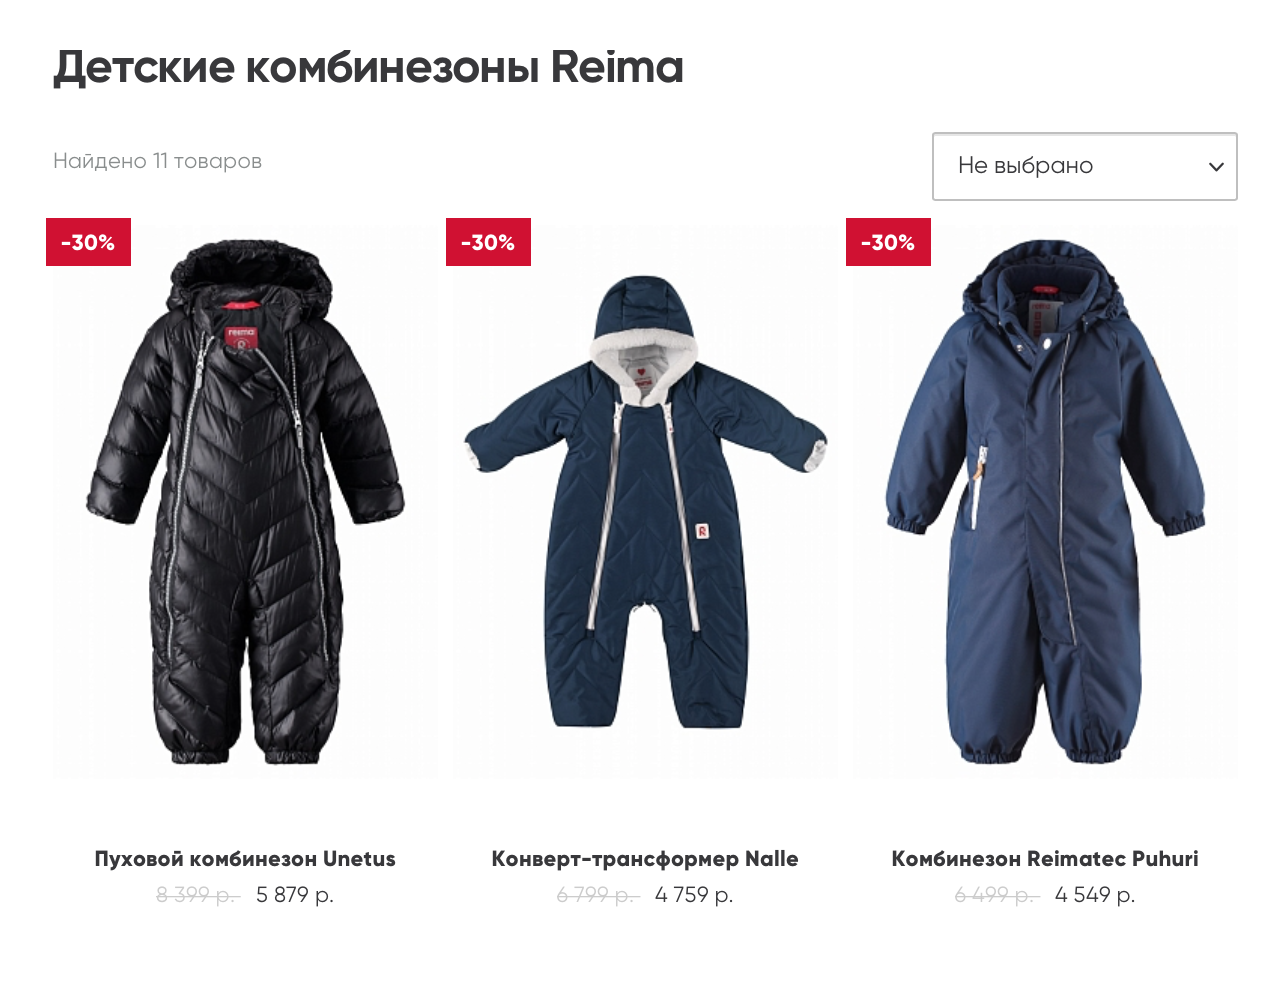 Когда я пишу эту статью, в магазинах проходят зимние распродажи, но даже со скидкой в 50% цены на зимние модели комбинезонов «Рейма» немаленькие. Источник: reimashop.ru